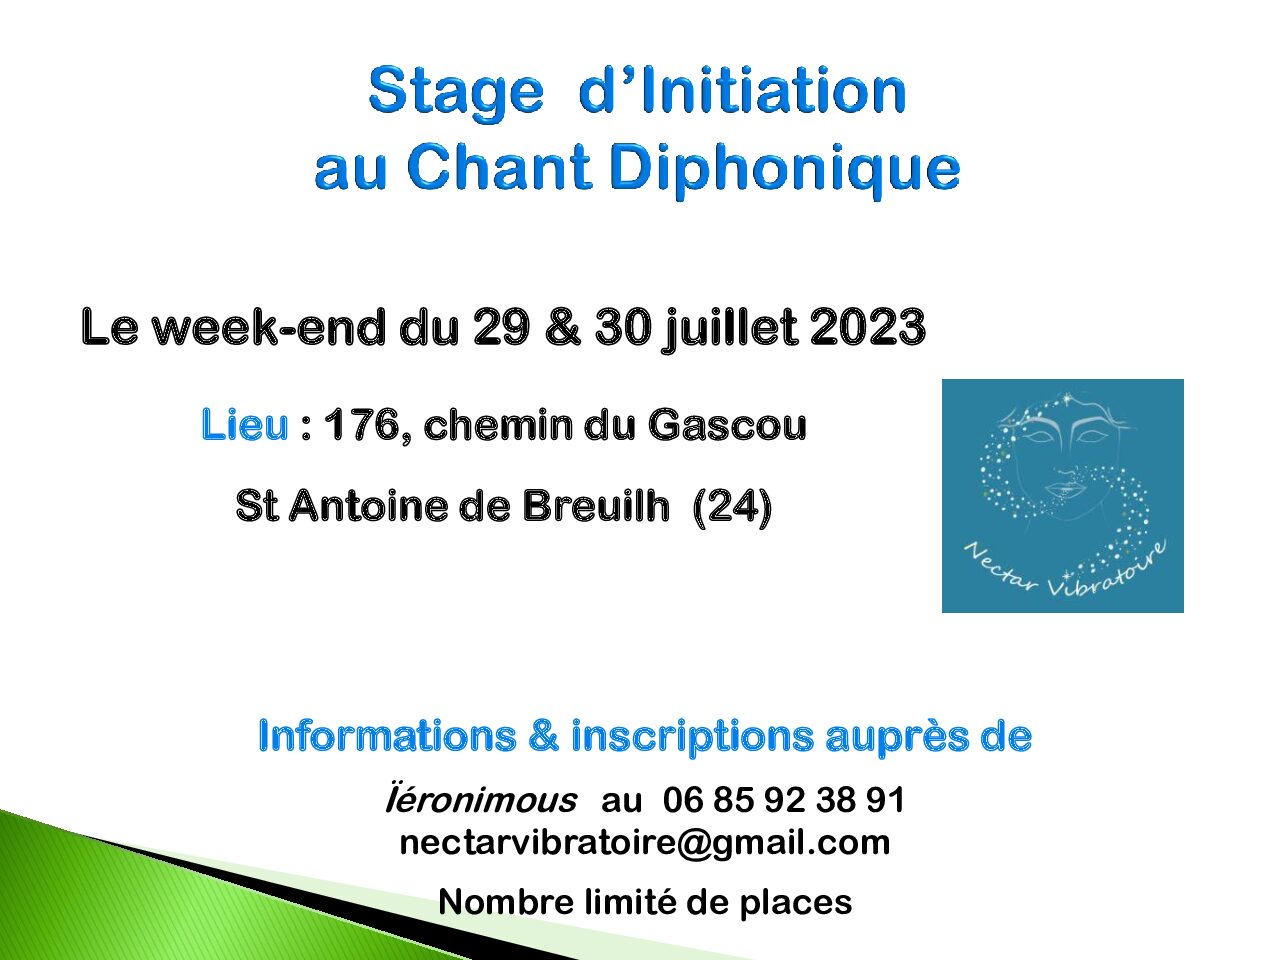 Stage d’initiation au Chant Diphonique les 29 & 30 juillet à Saint Antoine de Breuilh (24)